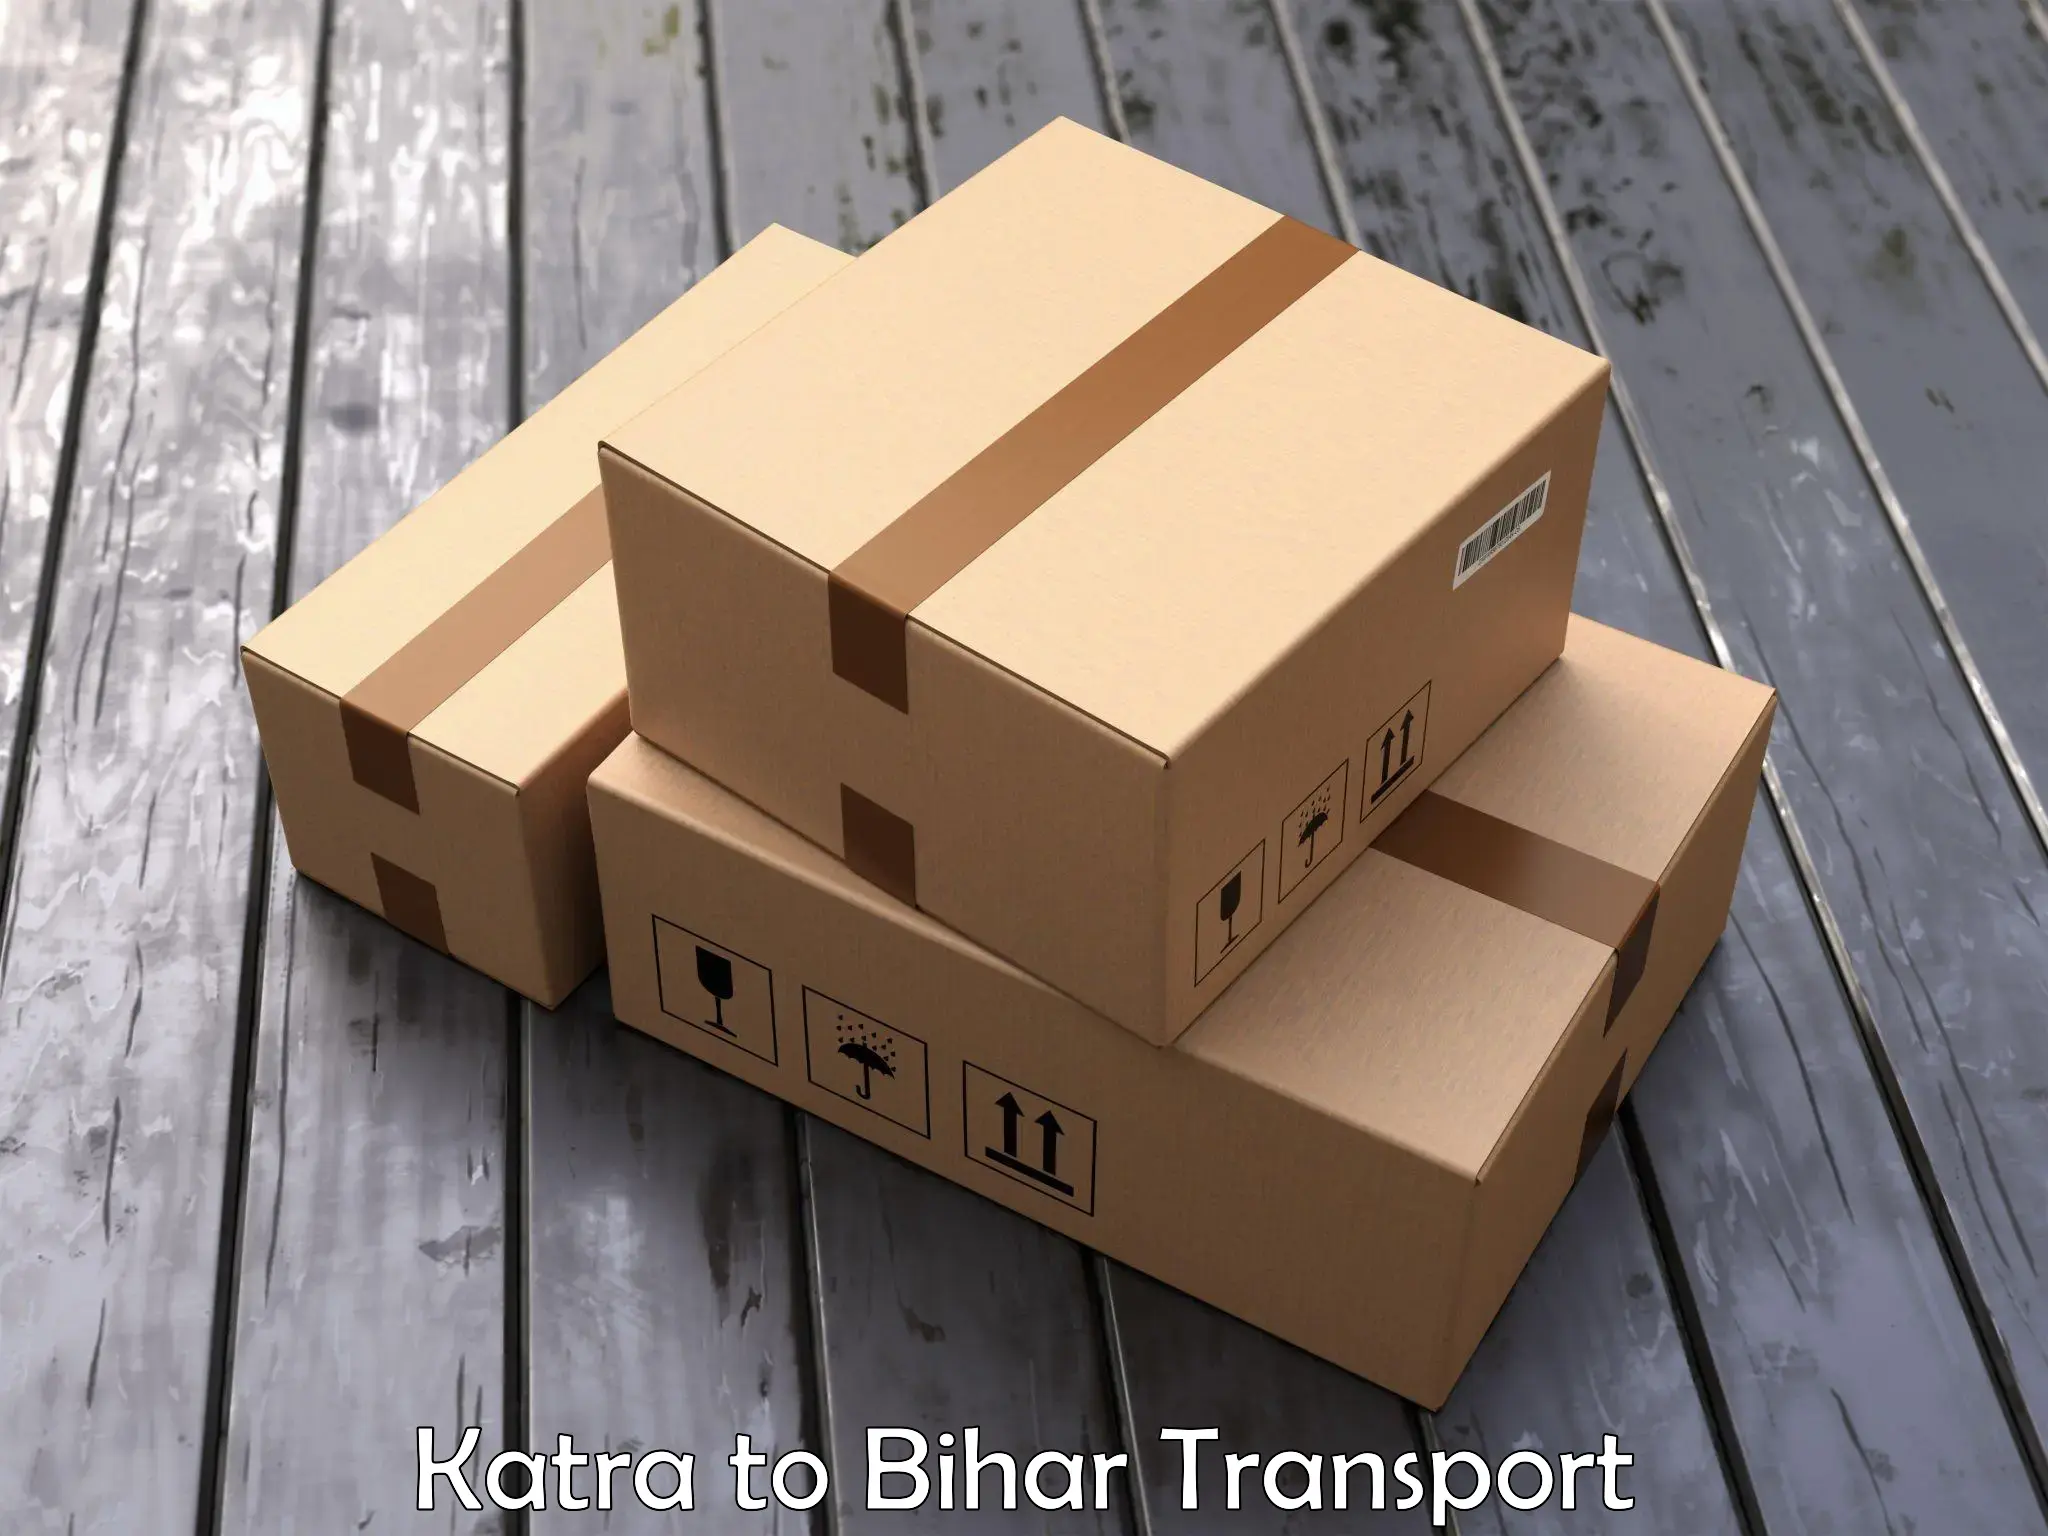 Nearest transport service Katra to NIT Patna